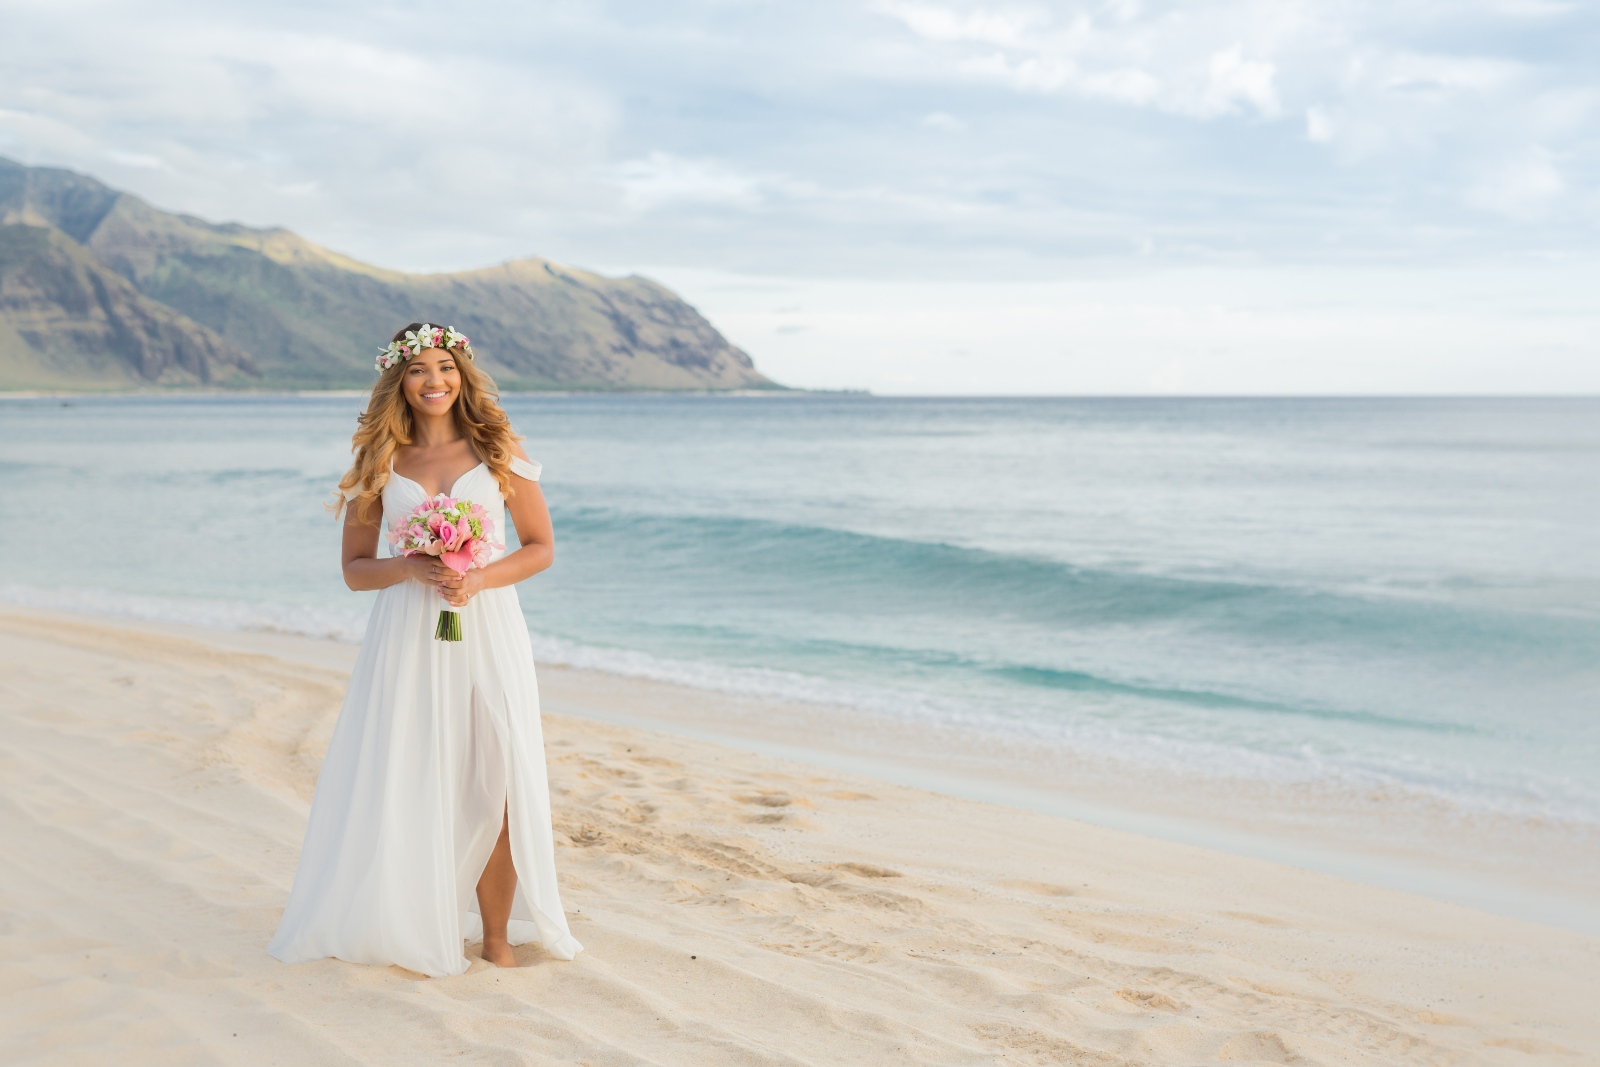 Beach Wedding Attire Tips for Brides - Destination Wedding Details